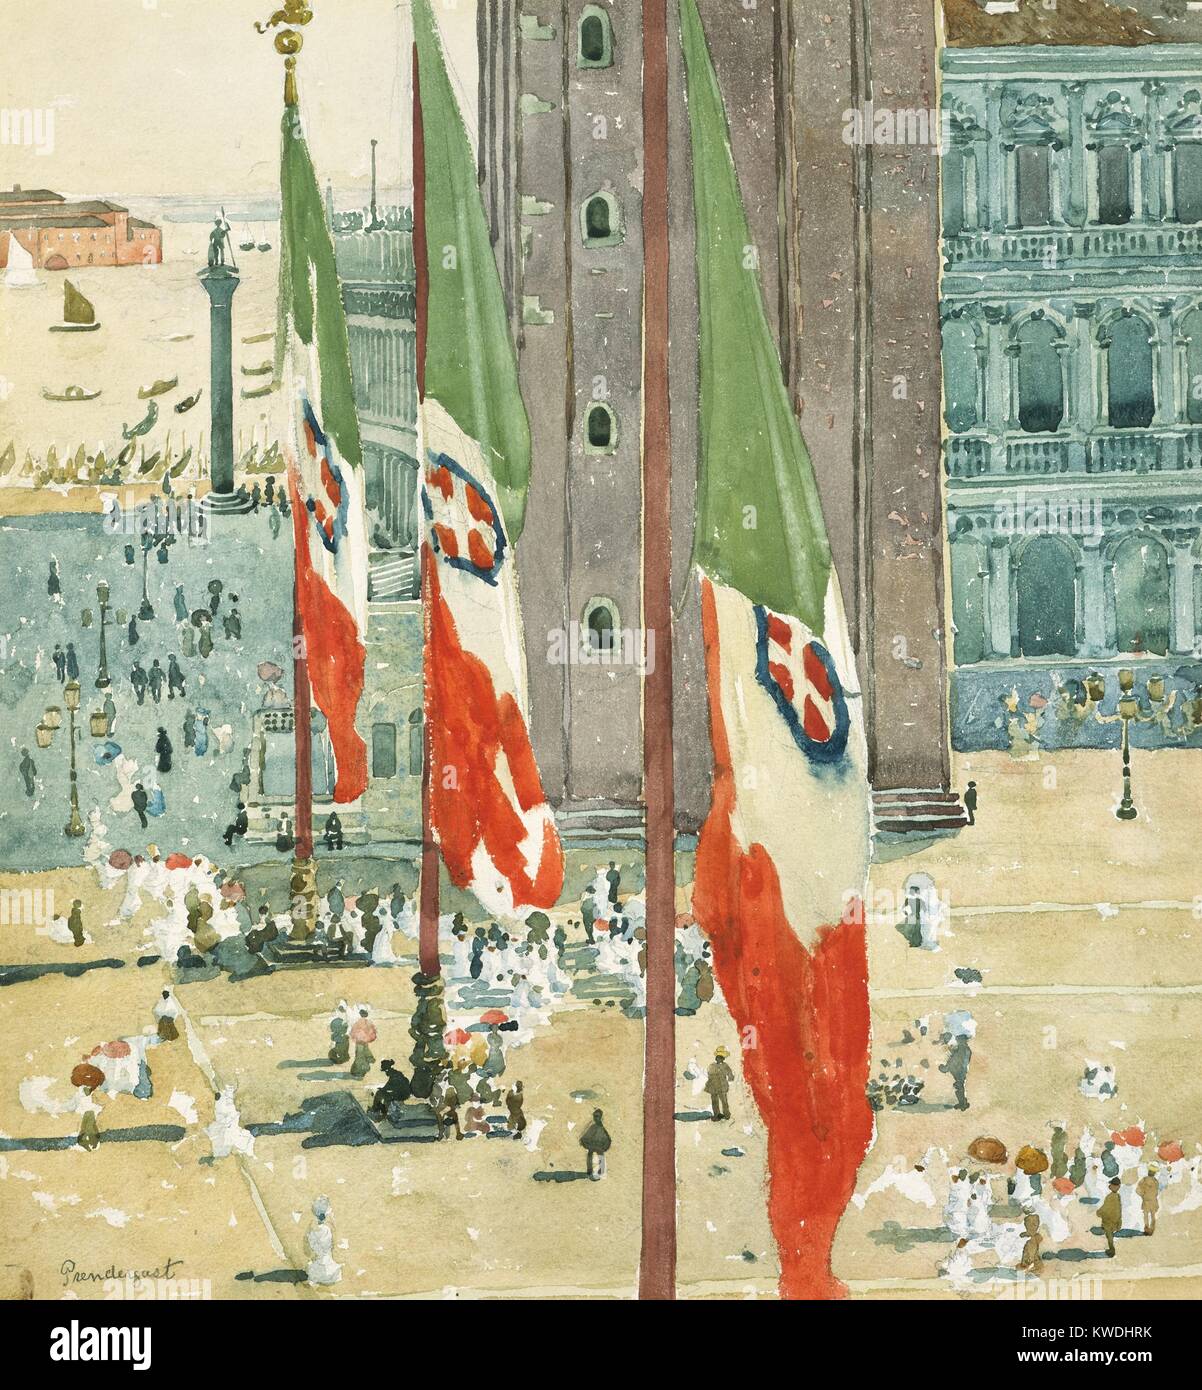 PIAZZA DI SAN MARCO, von Maurice Brazil Prendergast, 1898-99, Amerikanische Malerei, Aquarell. Fahnen dominieren die Szene, die in der venezianischen Lagune, mit der St. Marks Platz unten (BSLOC 2017 7 147) Stockfoto